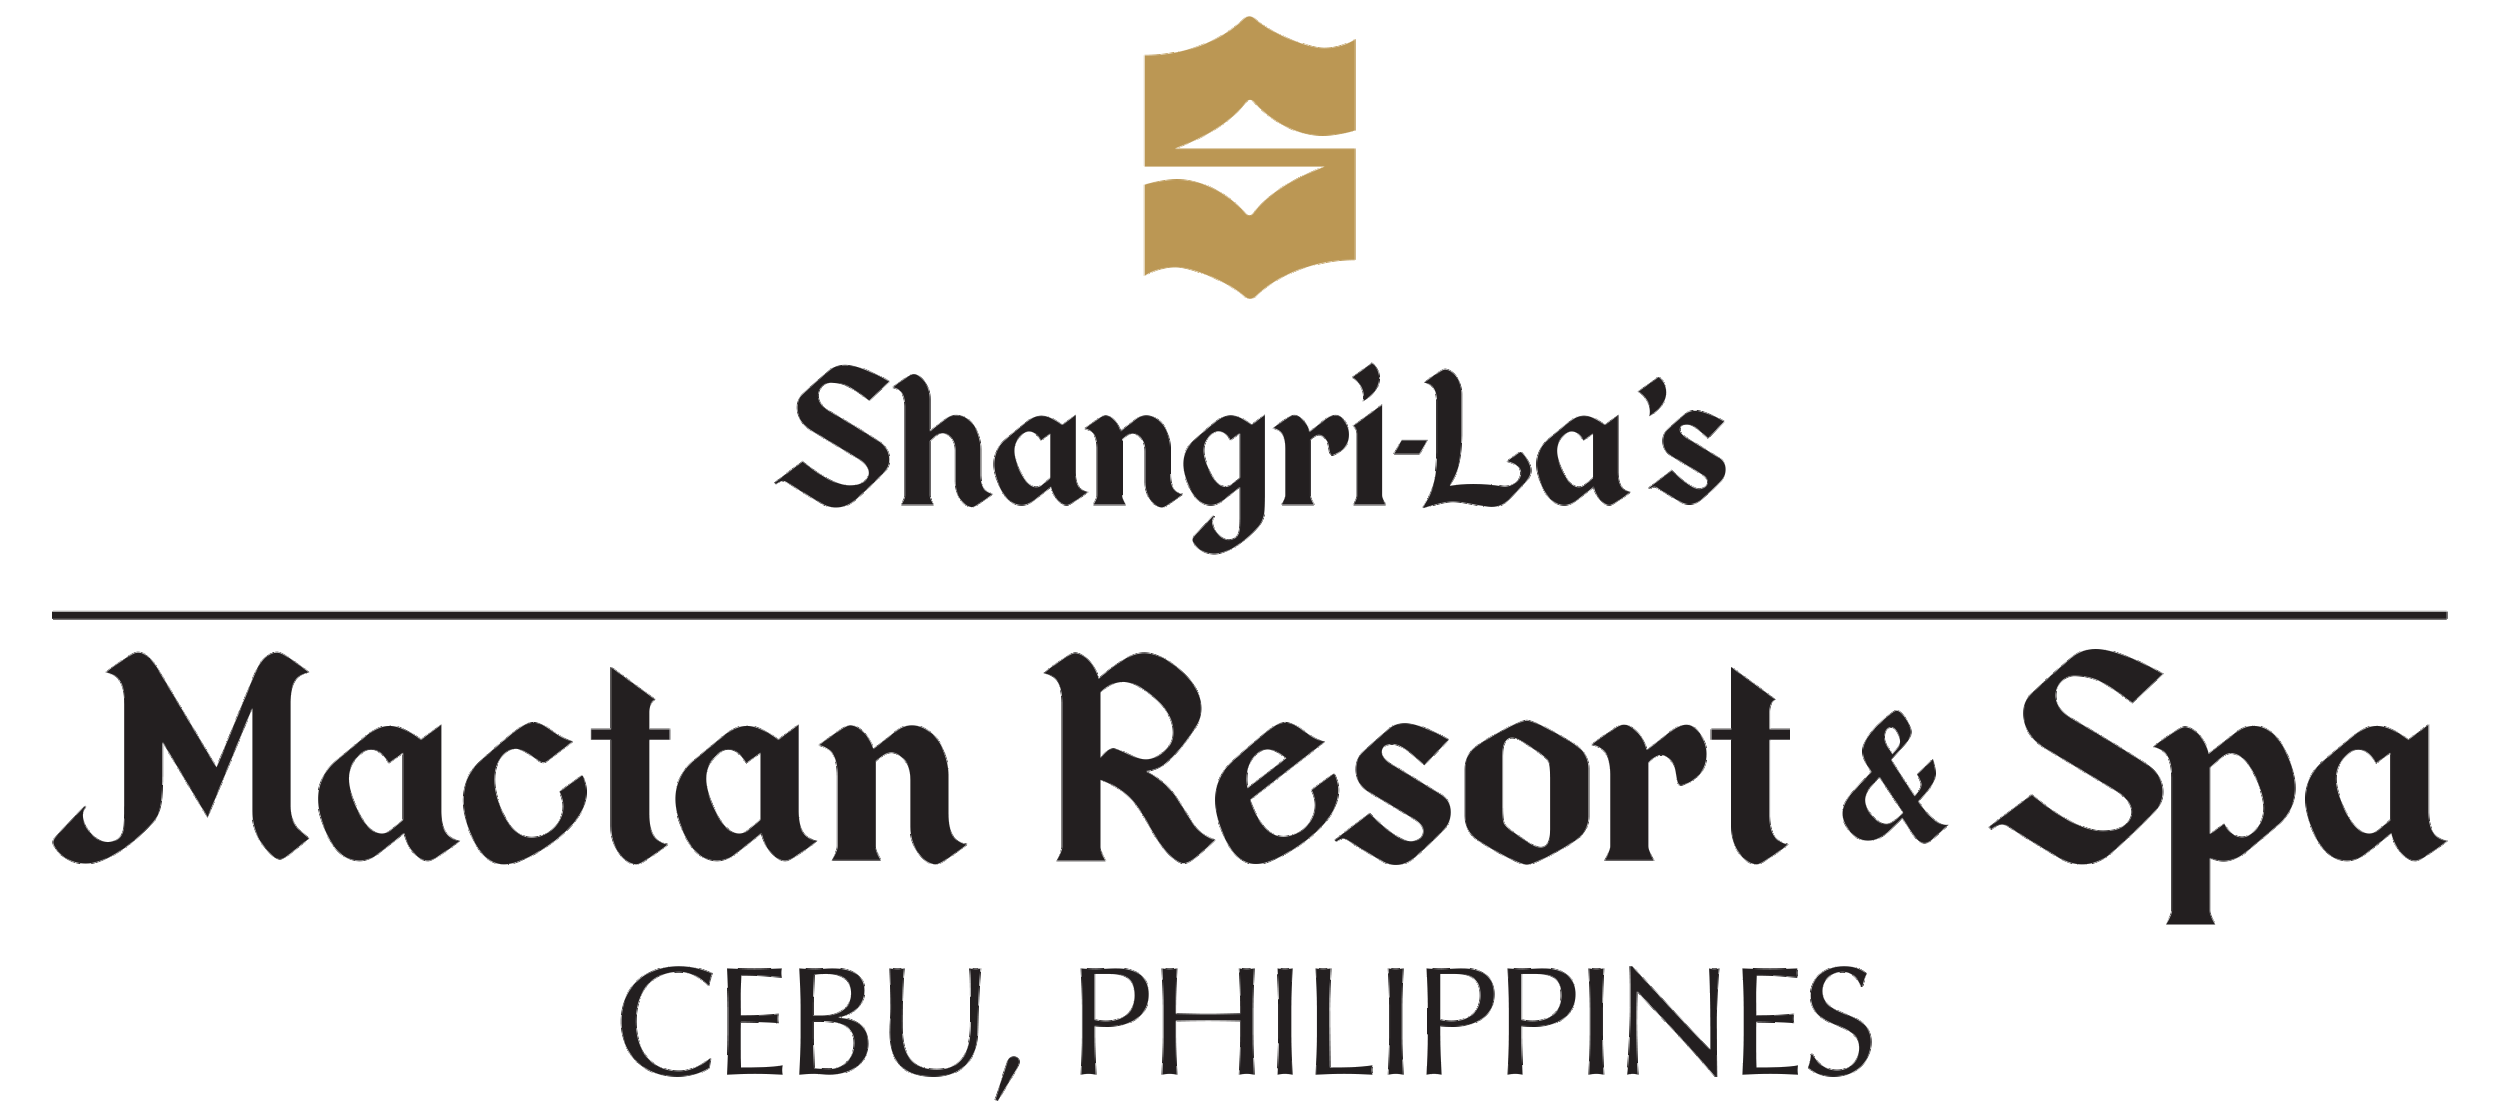 Shangrila_logo.png